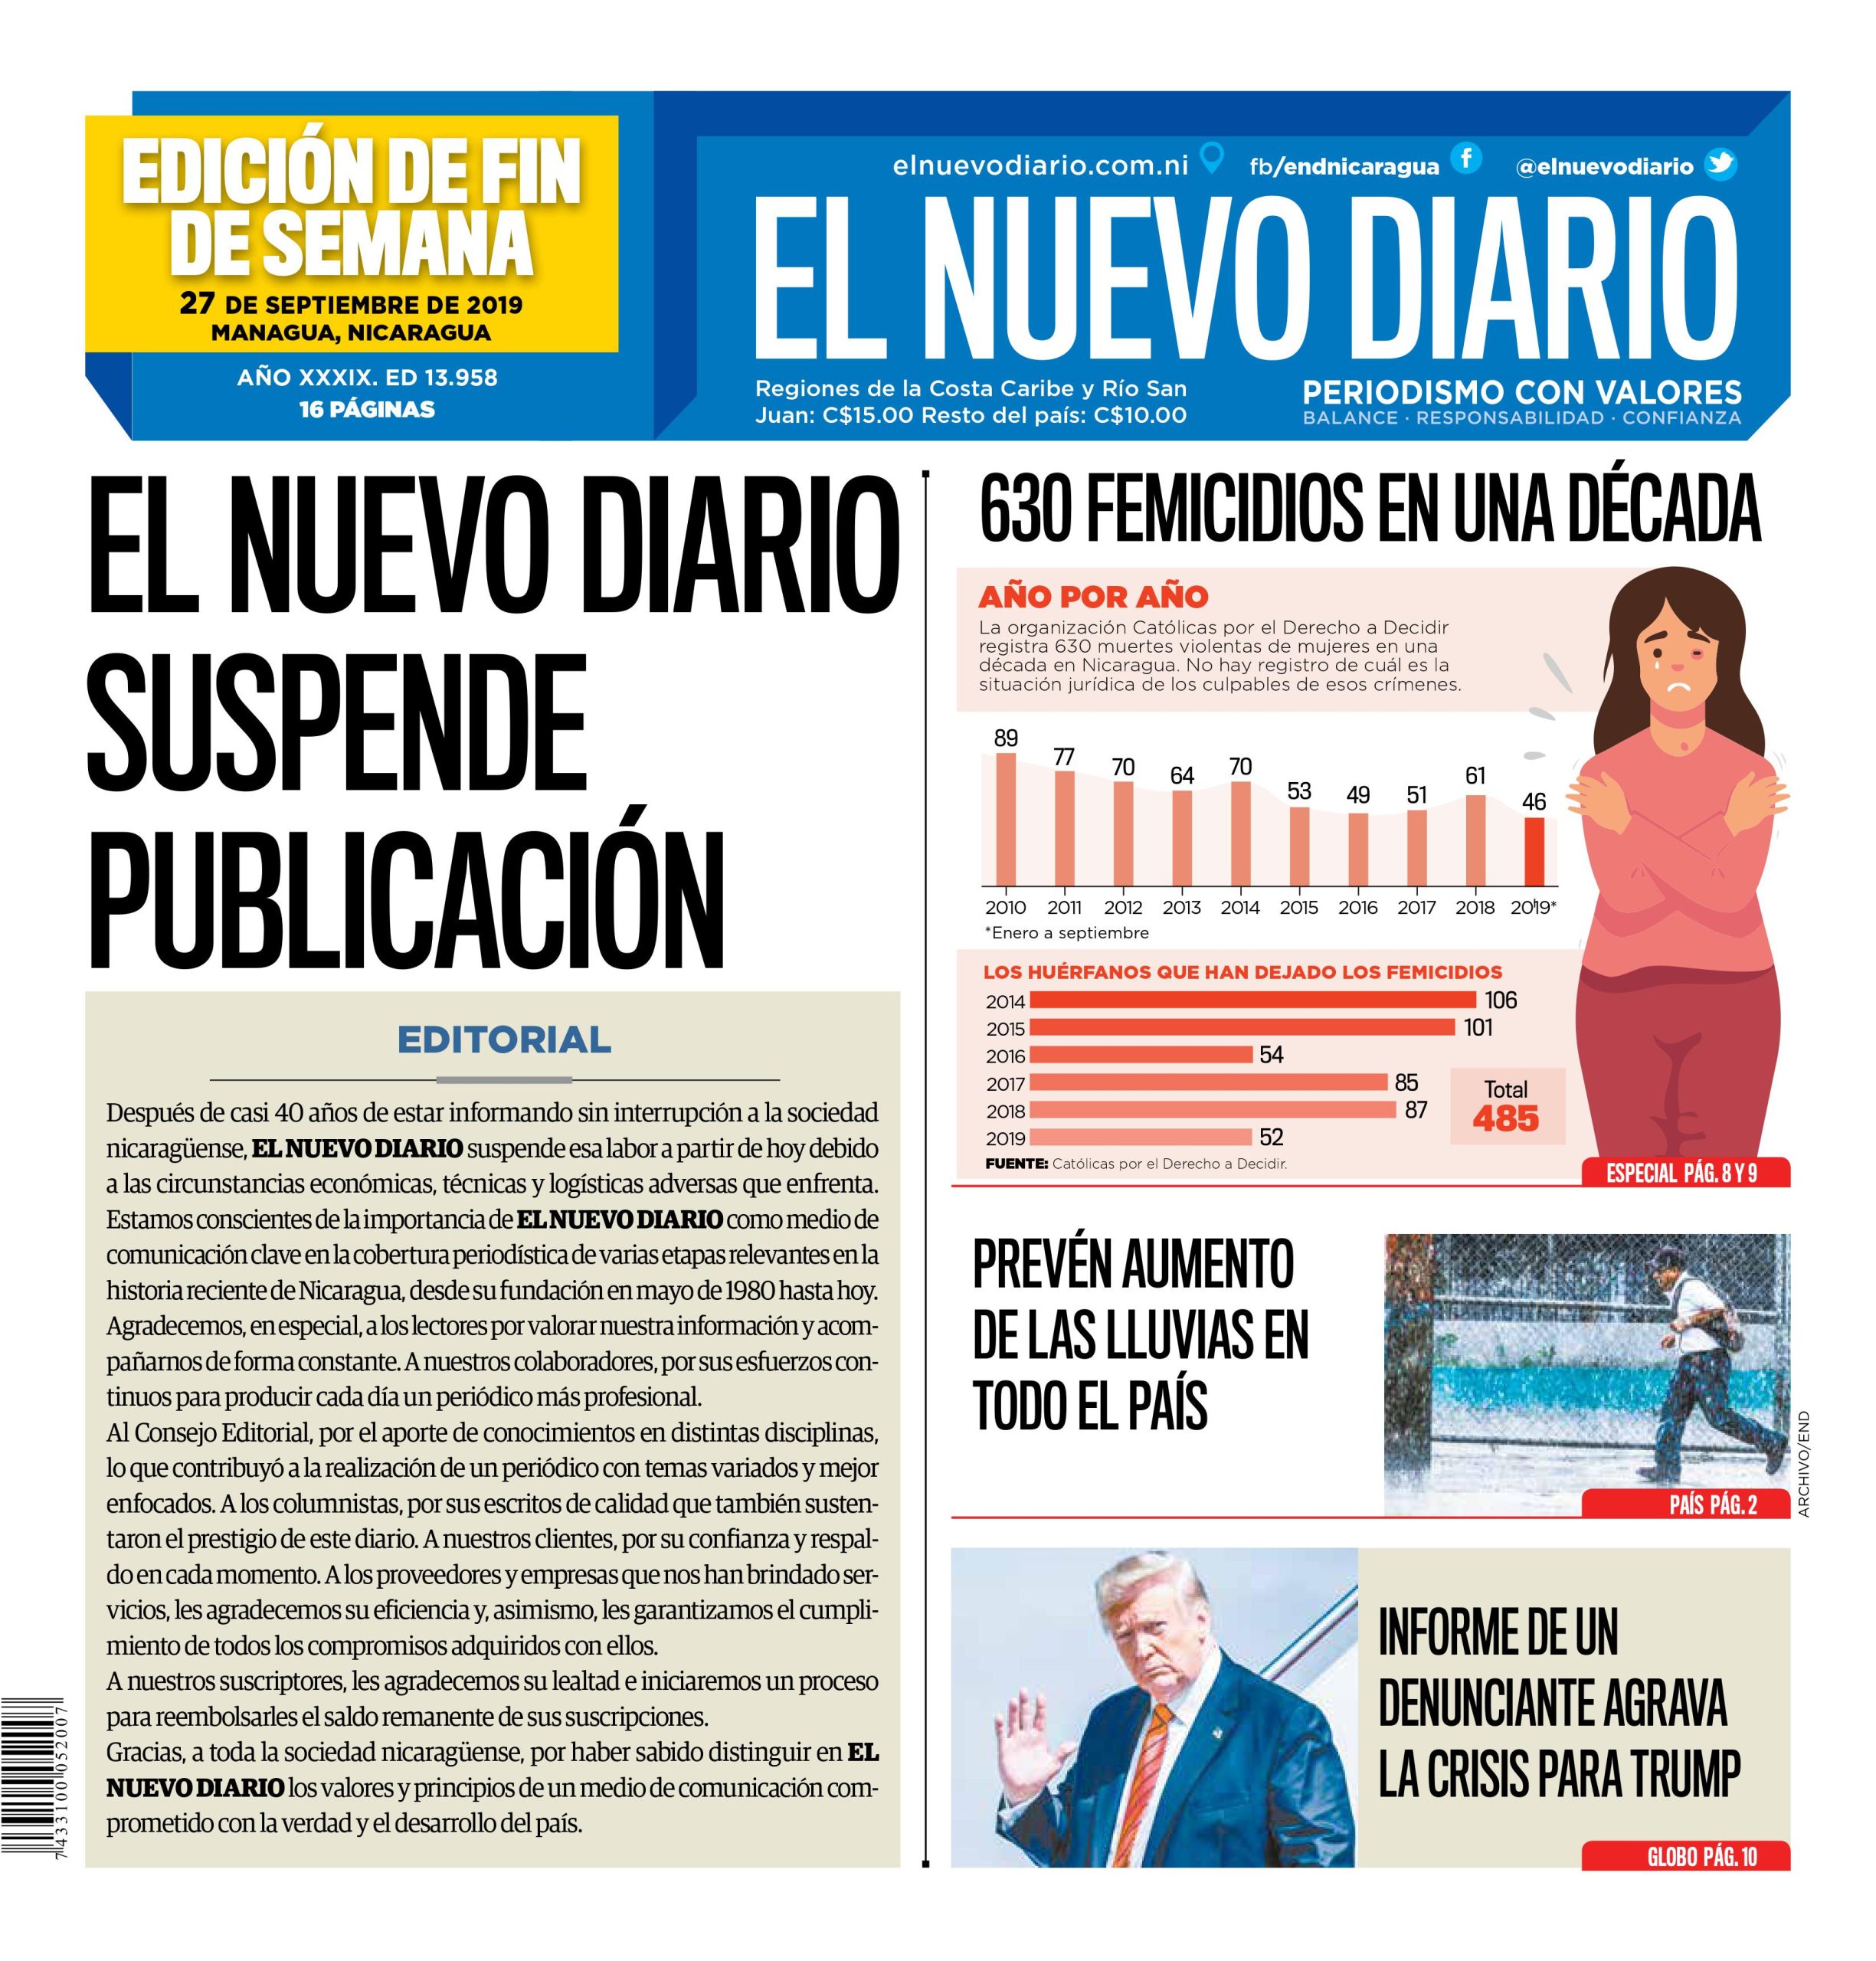 El Nuevo Diario publicó un editorial confirmando la suspensión de sus publicaciones y agradeciendo a sus lectores. Cortesía: El Nuevo Diario